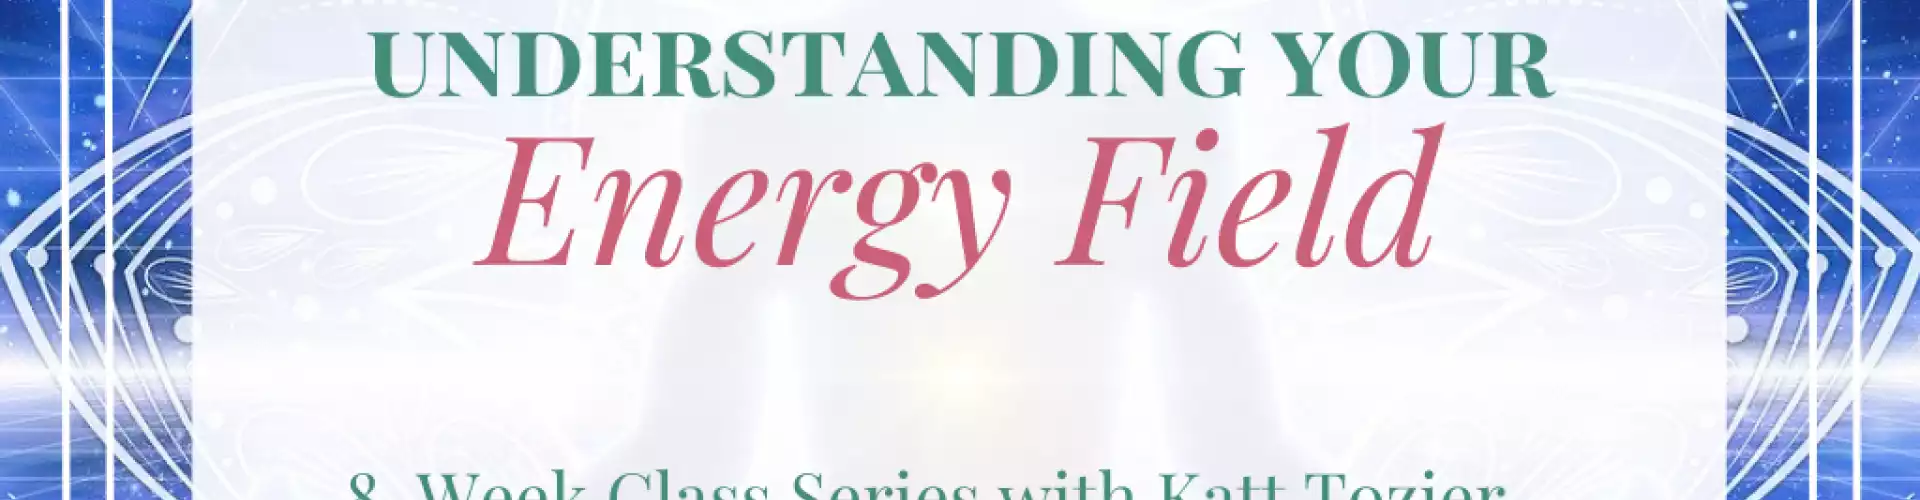 Understanding Your Energy Field